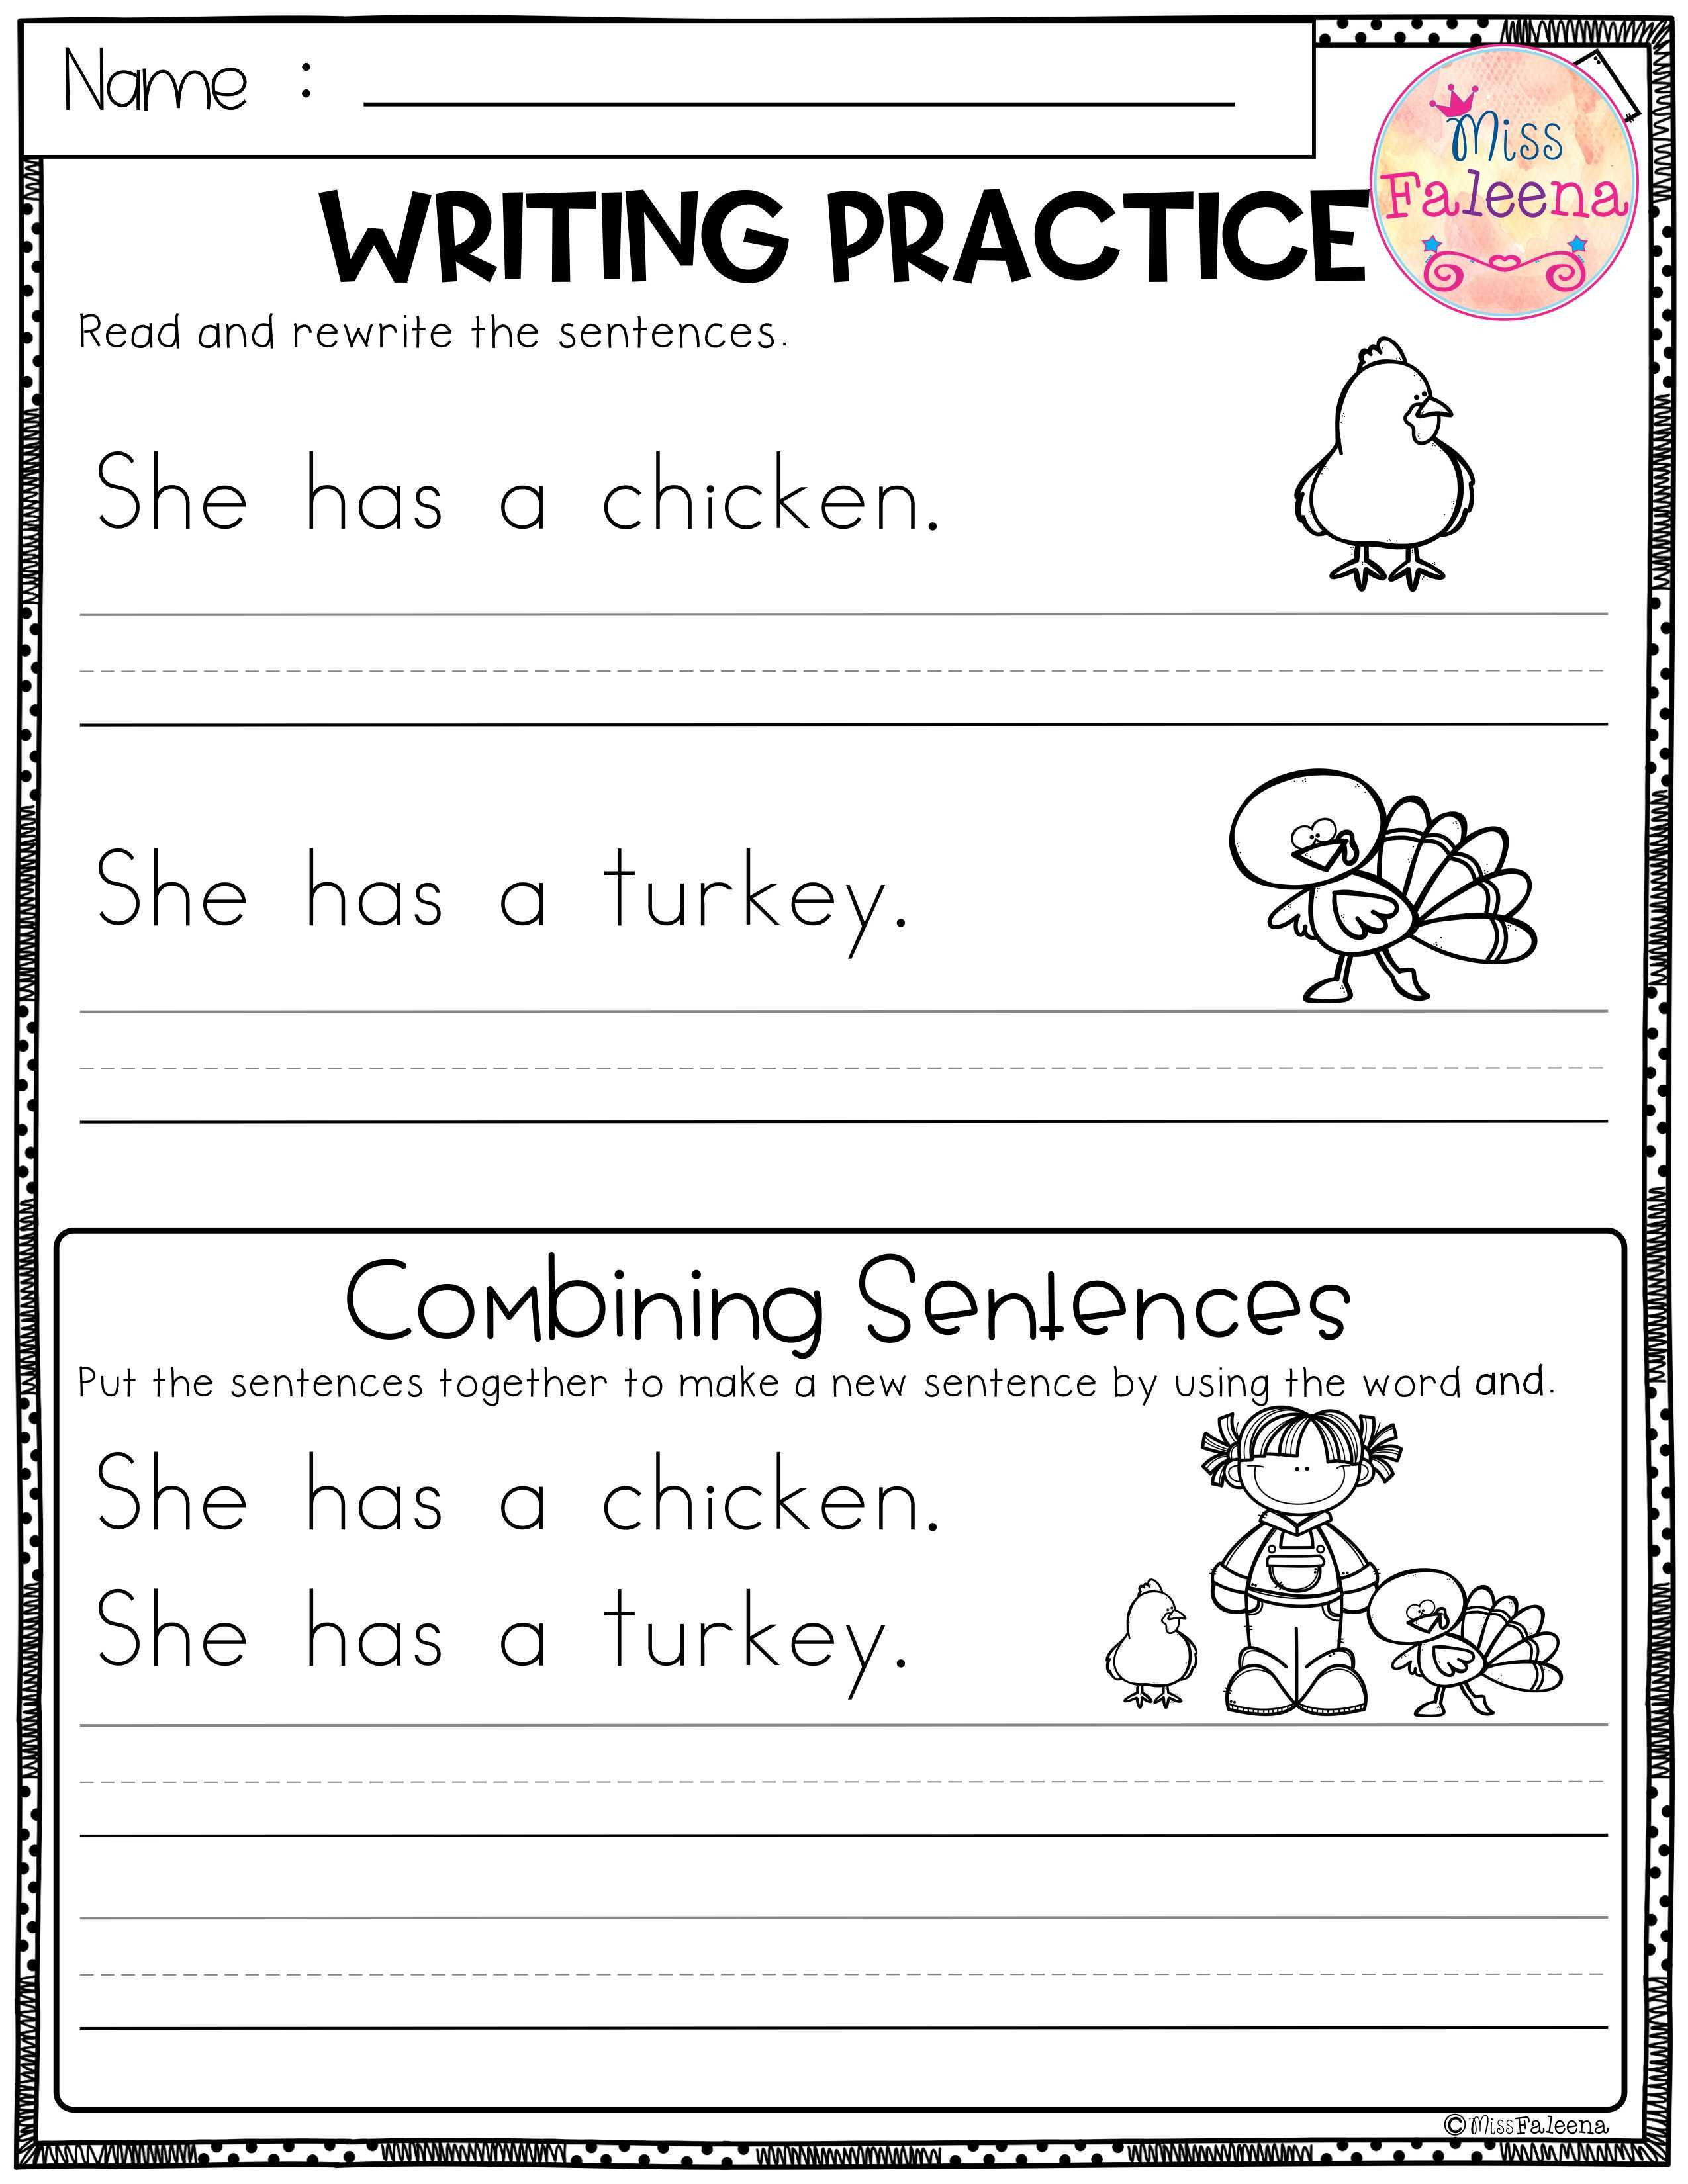 20 Combining Sentences Worksheet 3rd Grade Desalas Template